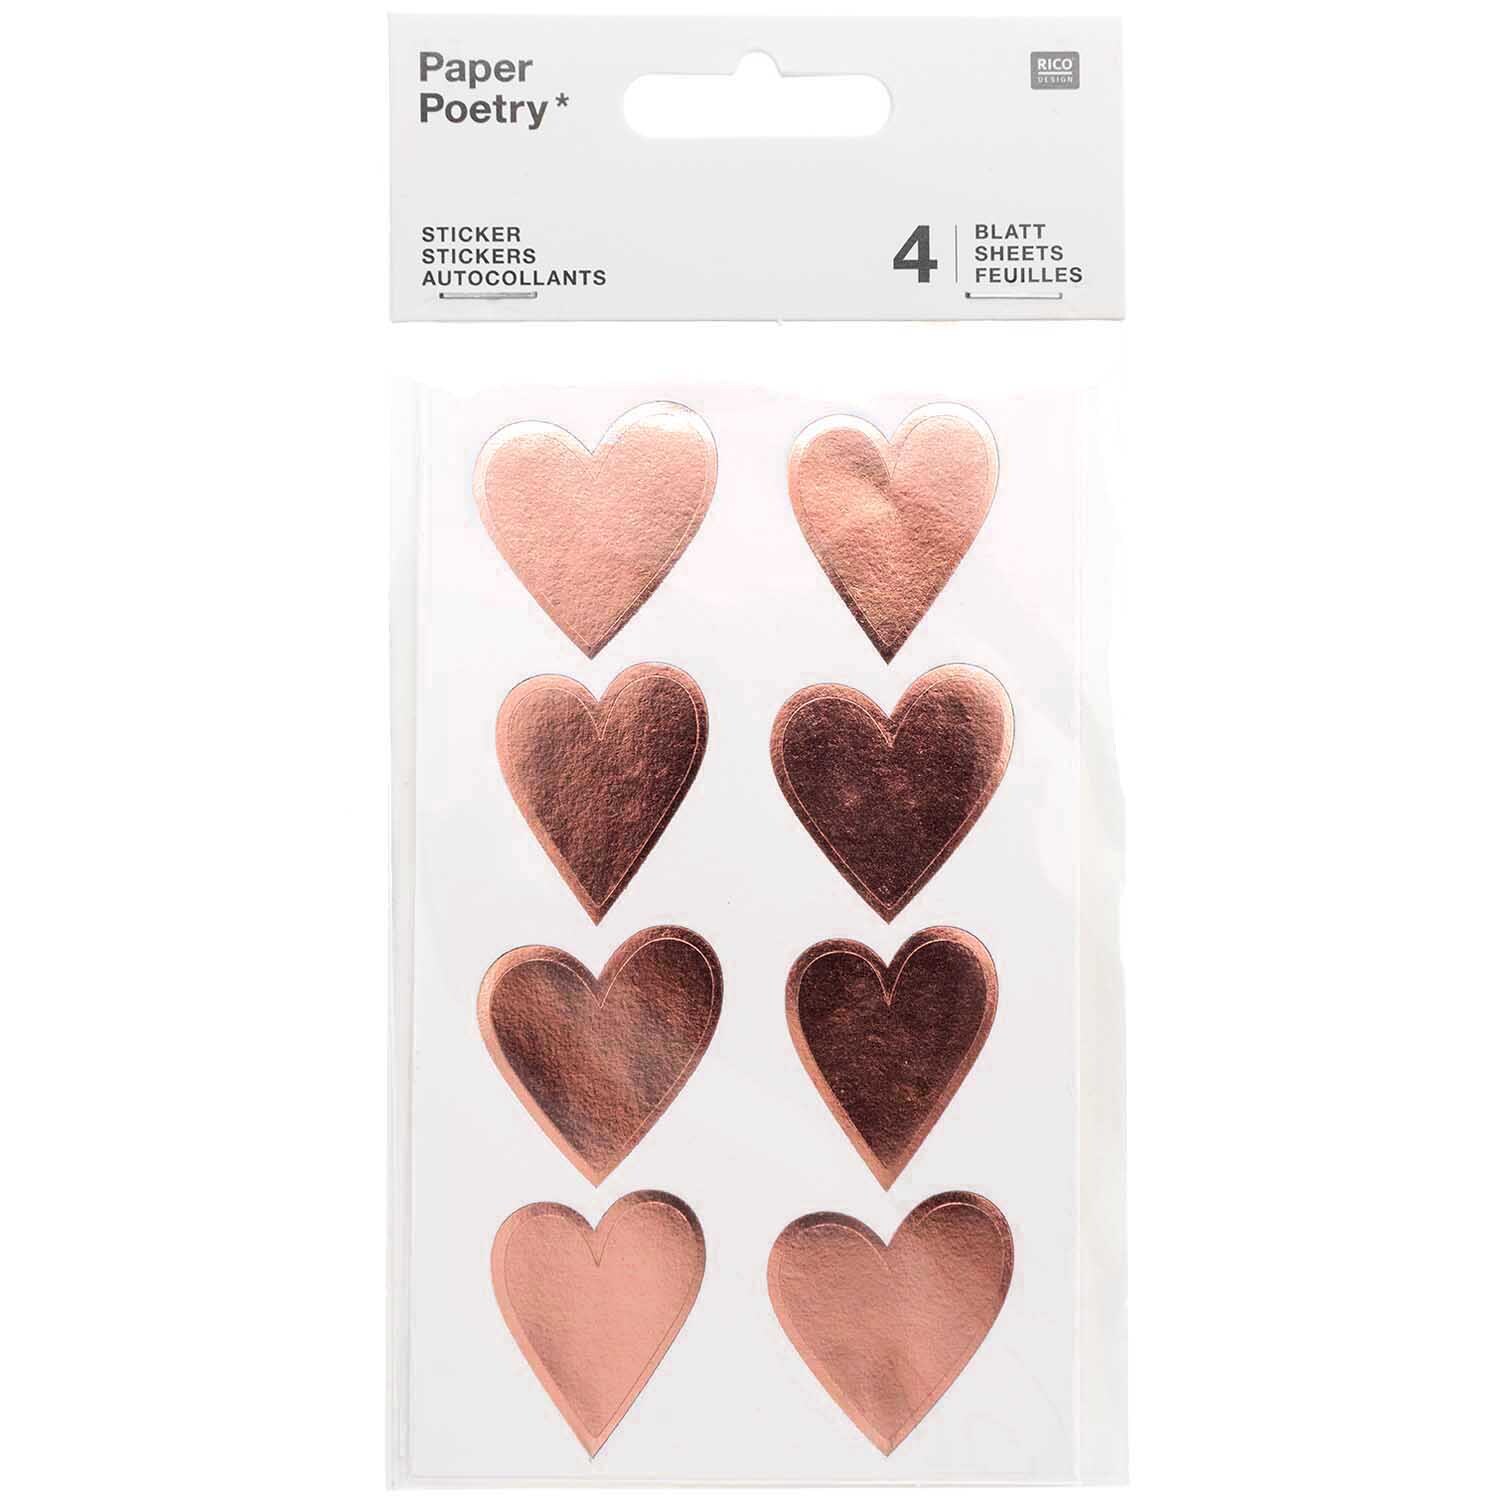 Paper Poetry Sticker große Blüten 4 Blatt günstig online kaufen »